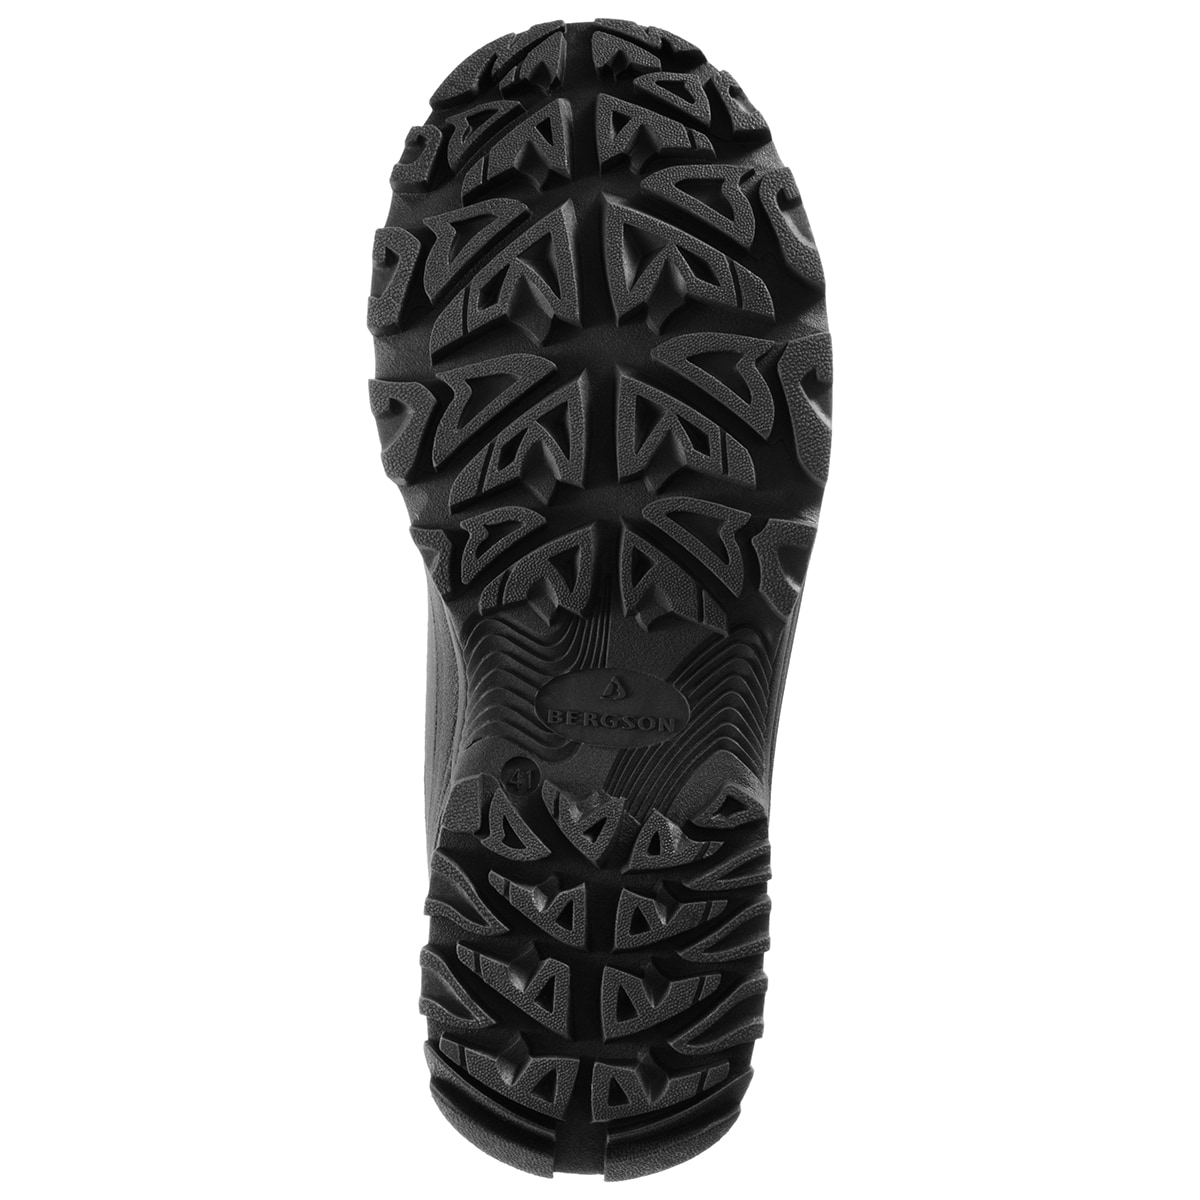 Зимові черевики Bergson Snowlander SB - Black